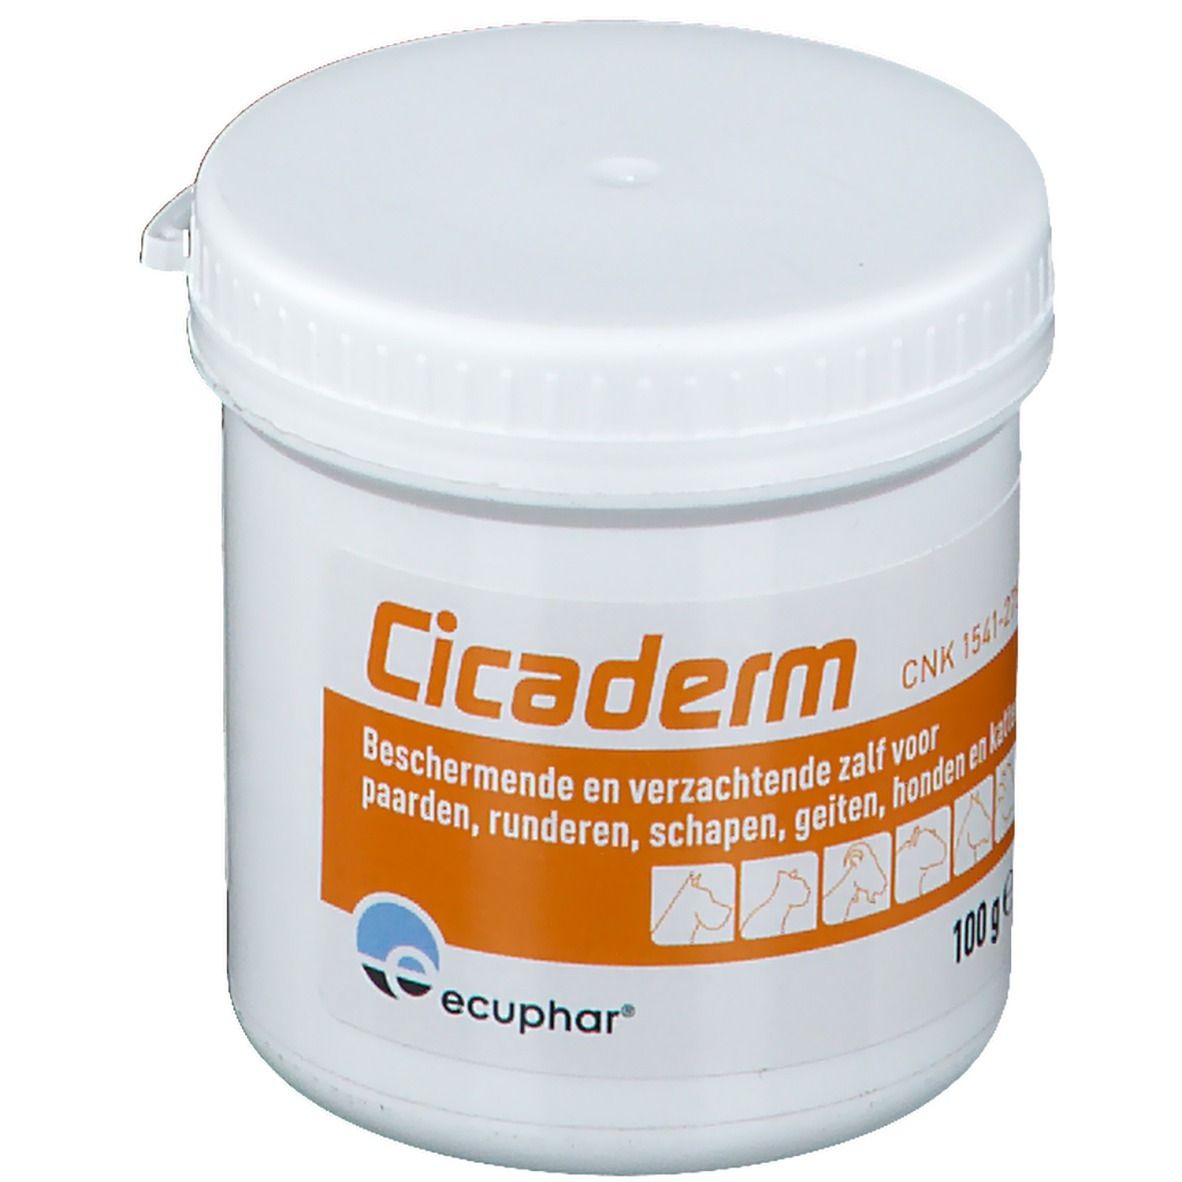 Ecuphar® Cicaderm Crème